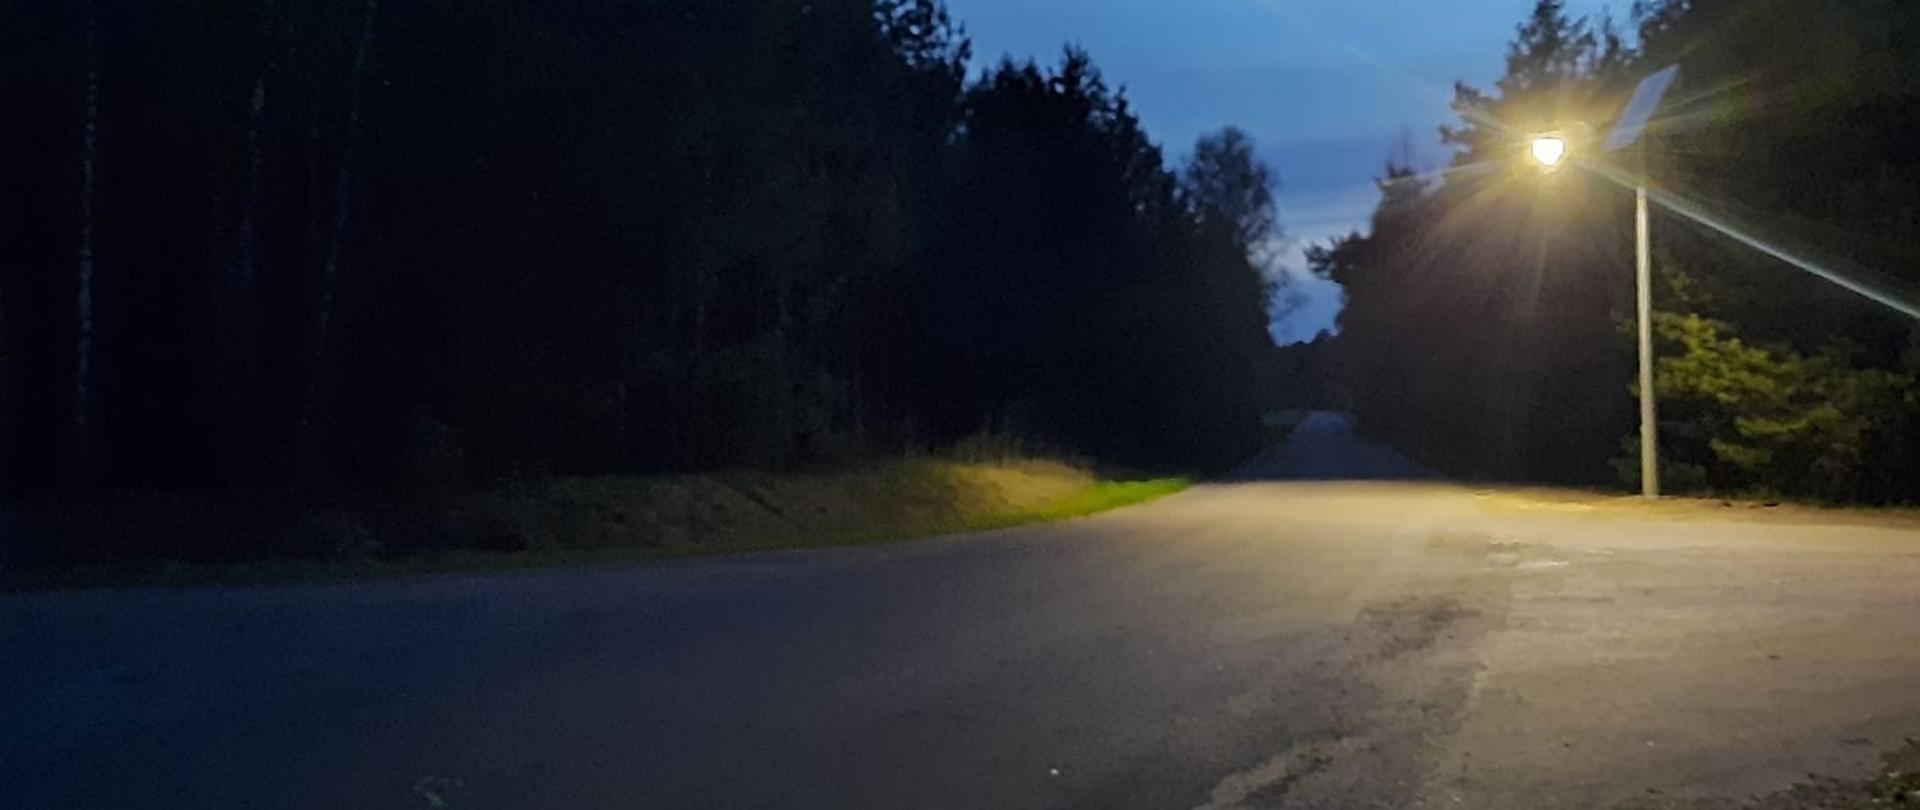 Zdjęcie przedstawia skrzyżowanie drogi powiatowej numer 3223 i drogi gminnej w gminie Jednorożec. Na skrzyżowaniu widnieje jaśniejąca lampa solarna, oświetlająca niebezpieczne po zajściu słońca miejsce na drodze. Zdjęcie wykonano wieczorem.